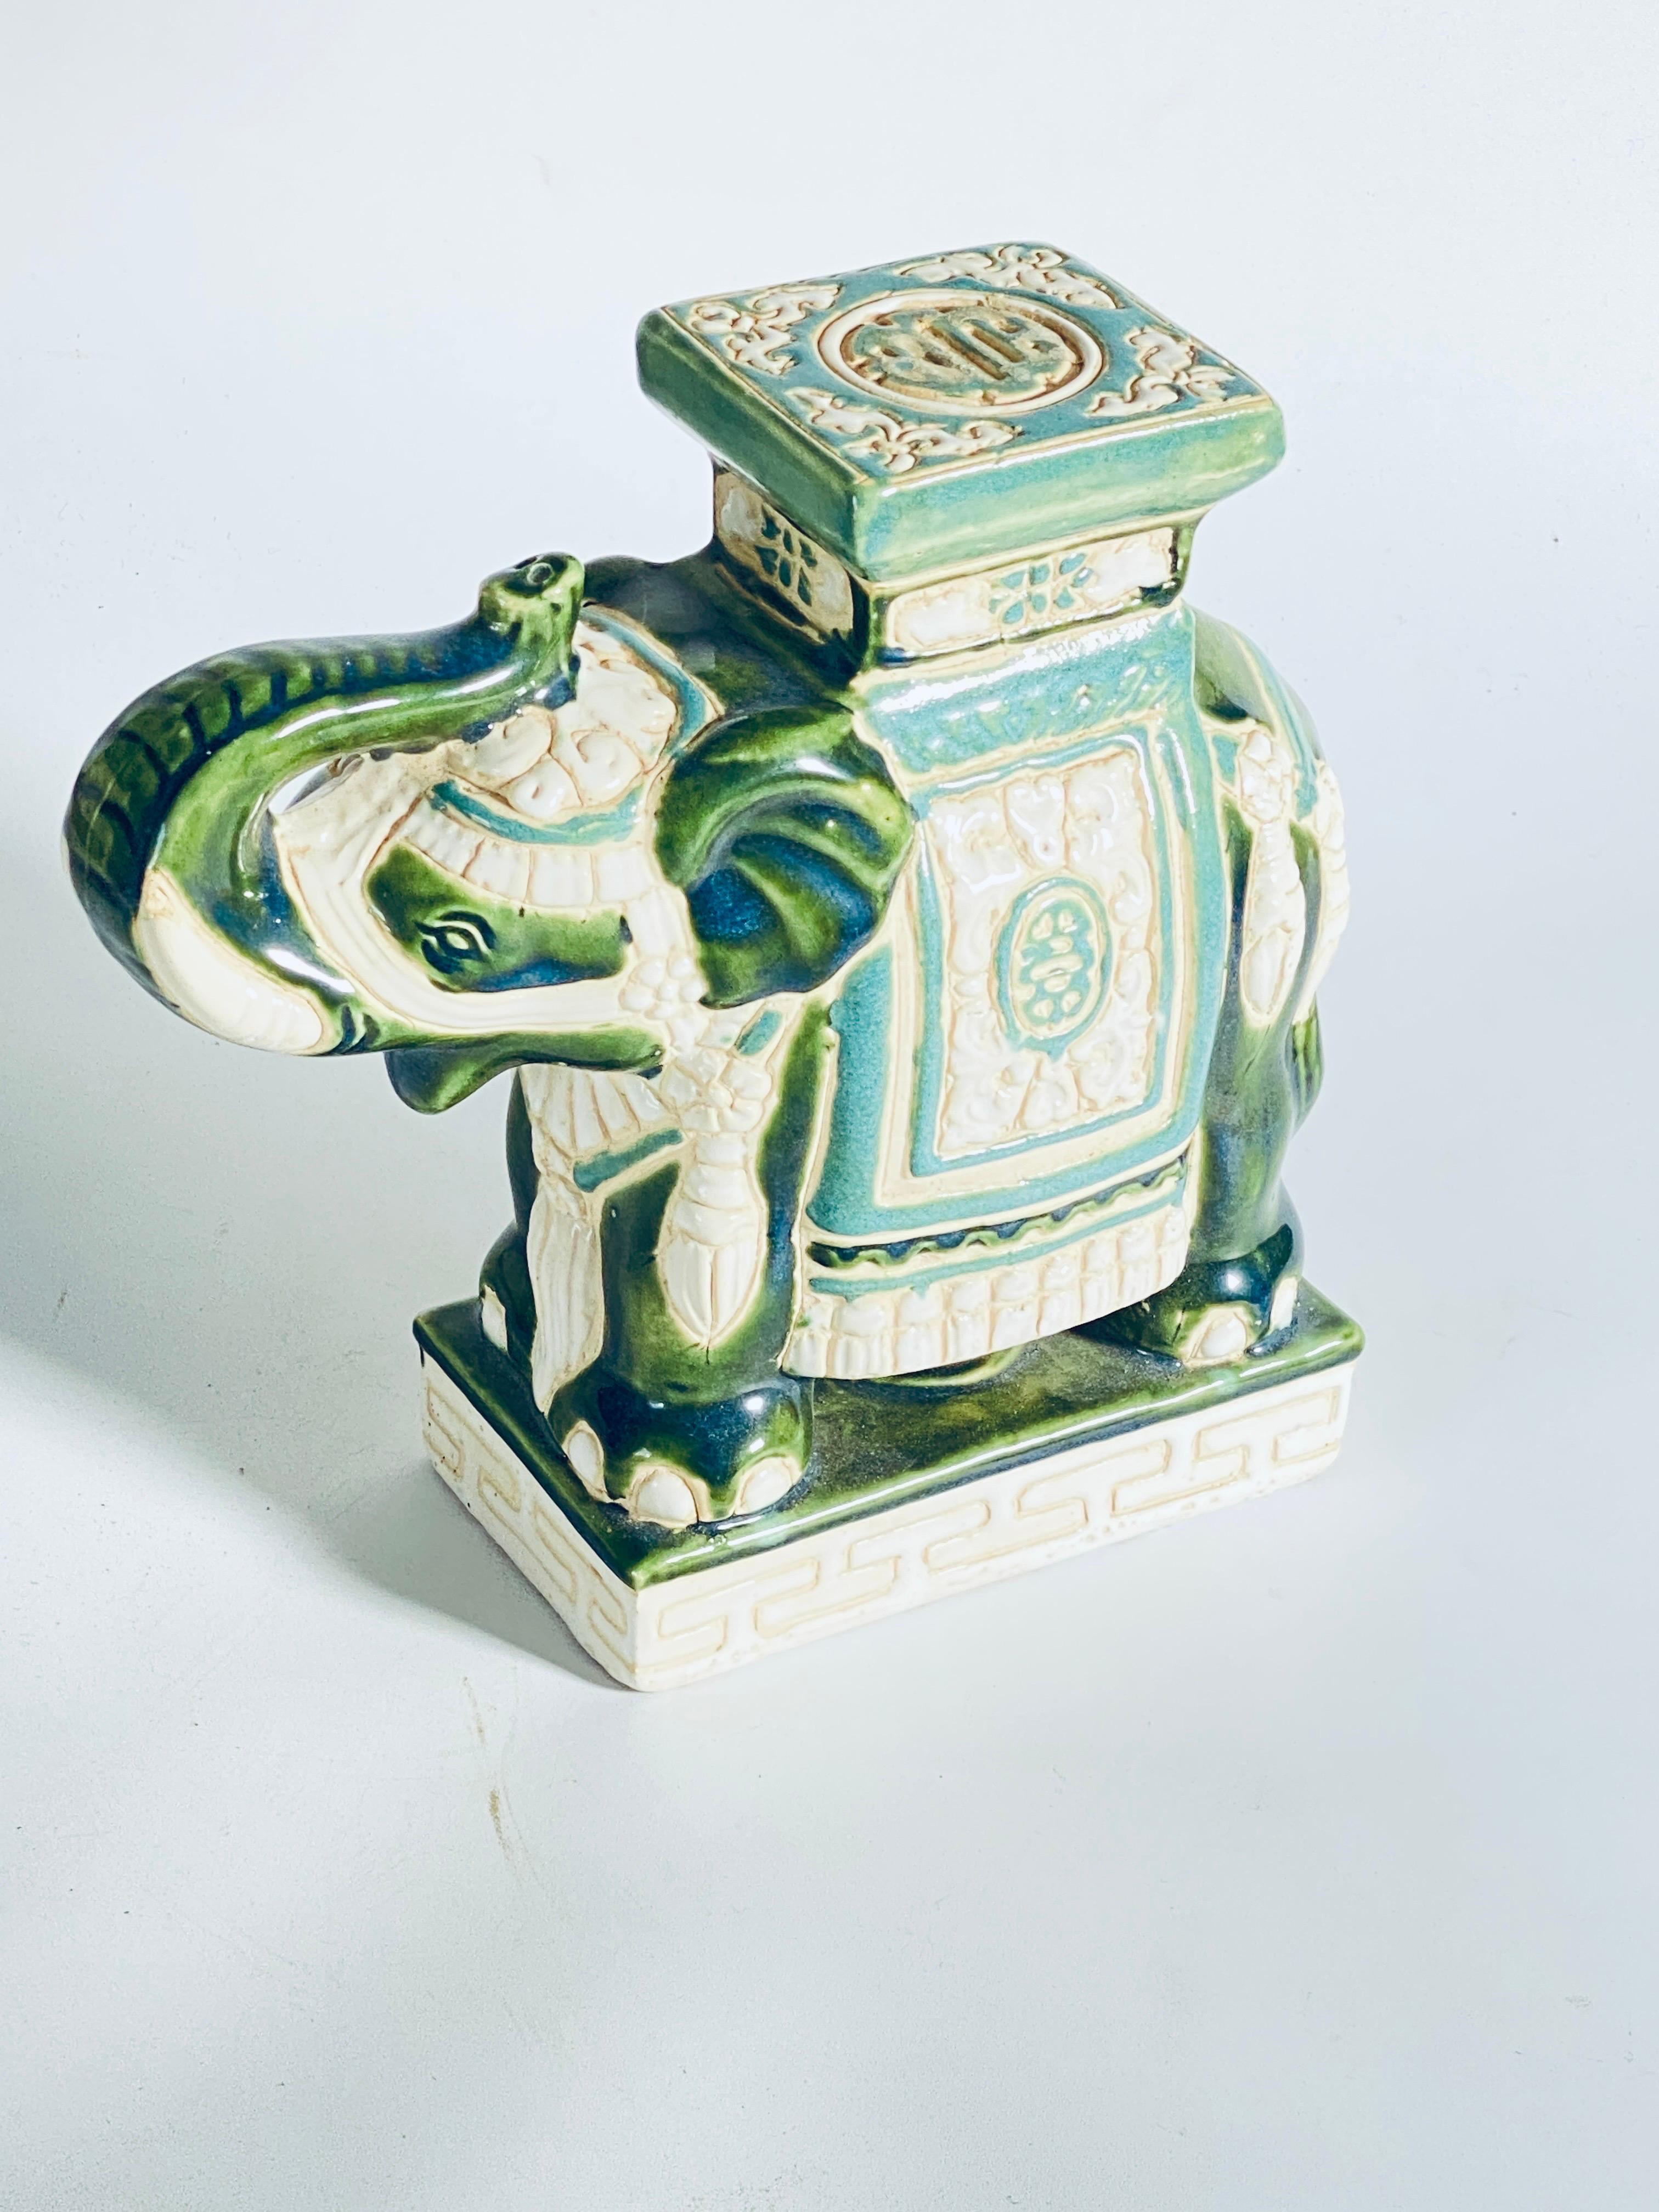 Mitte des 20. Jahrhunderts glasierter Keramik-Elefant  Blume Pflanzenhalter.
Handgefertigt aus Keramik. Eine schöne Ergänzung für Ihr Zuhause, drinnen oder draußen. Dies ist in gutem Zustand, grüne Farbe.